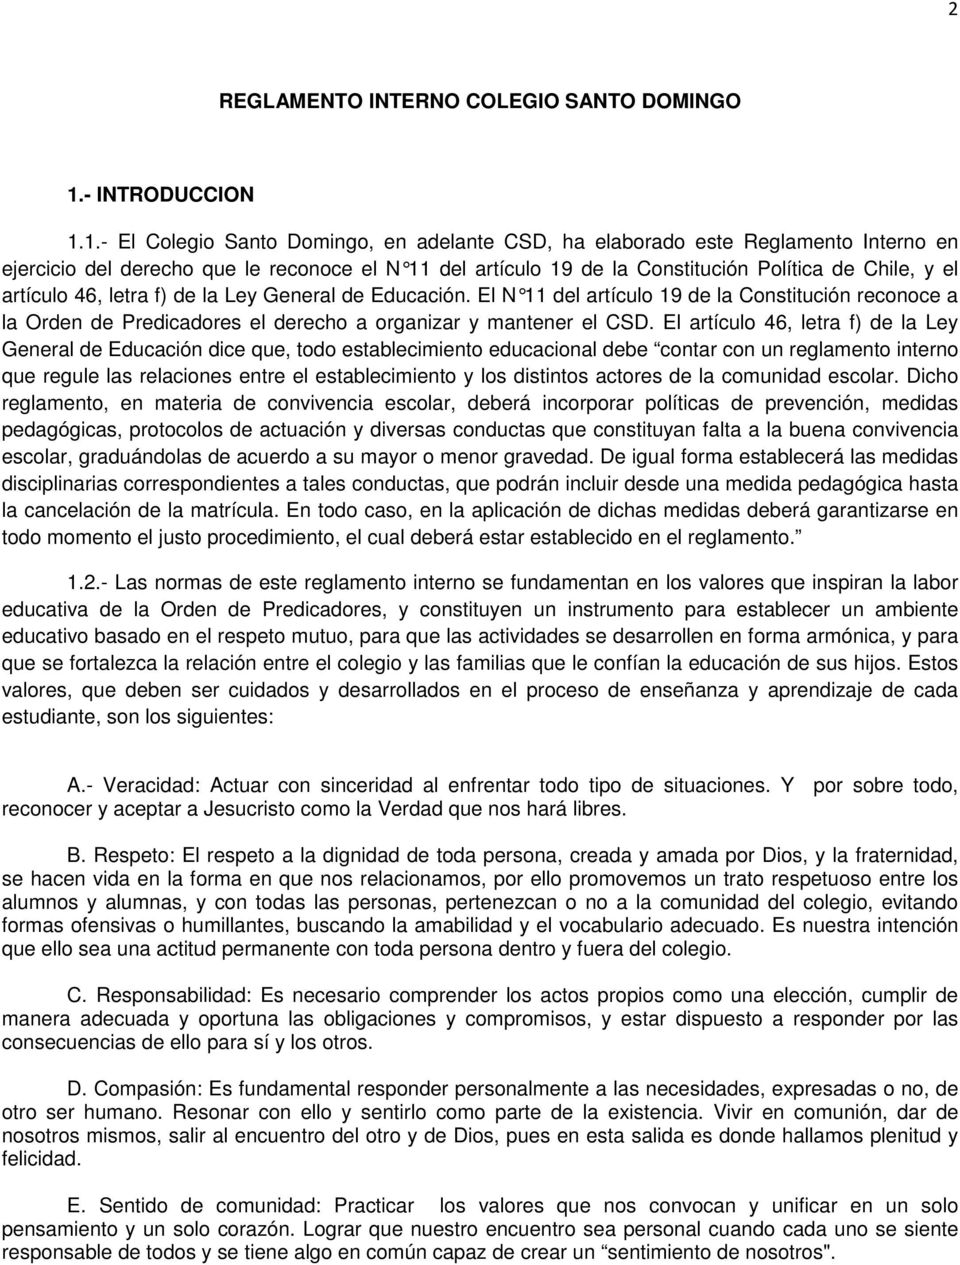 1.- El Colegio Santo Domingo, en adelante CSD, ha elaborado este Reglamento Interno en ejercicio del derecho que le reconoce el N 11 del artículo 19 de la Constitución Política de Chile, y el